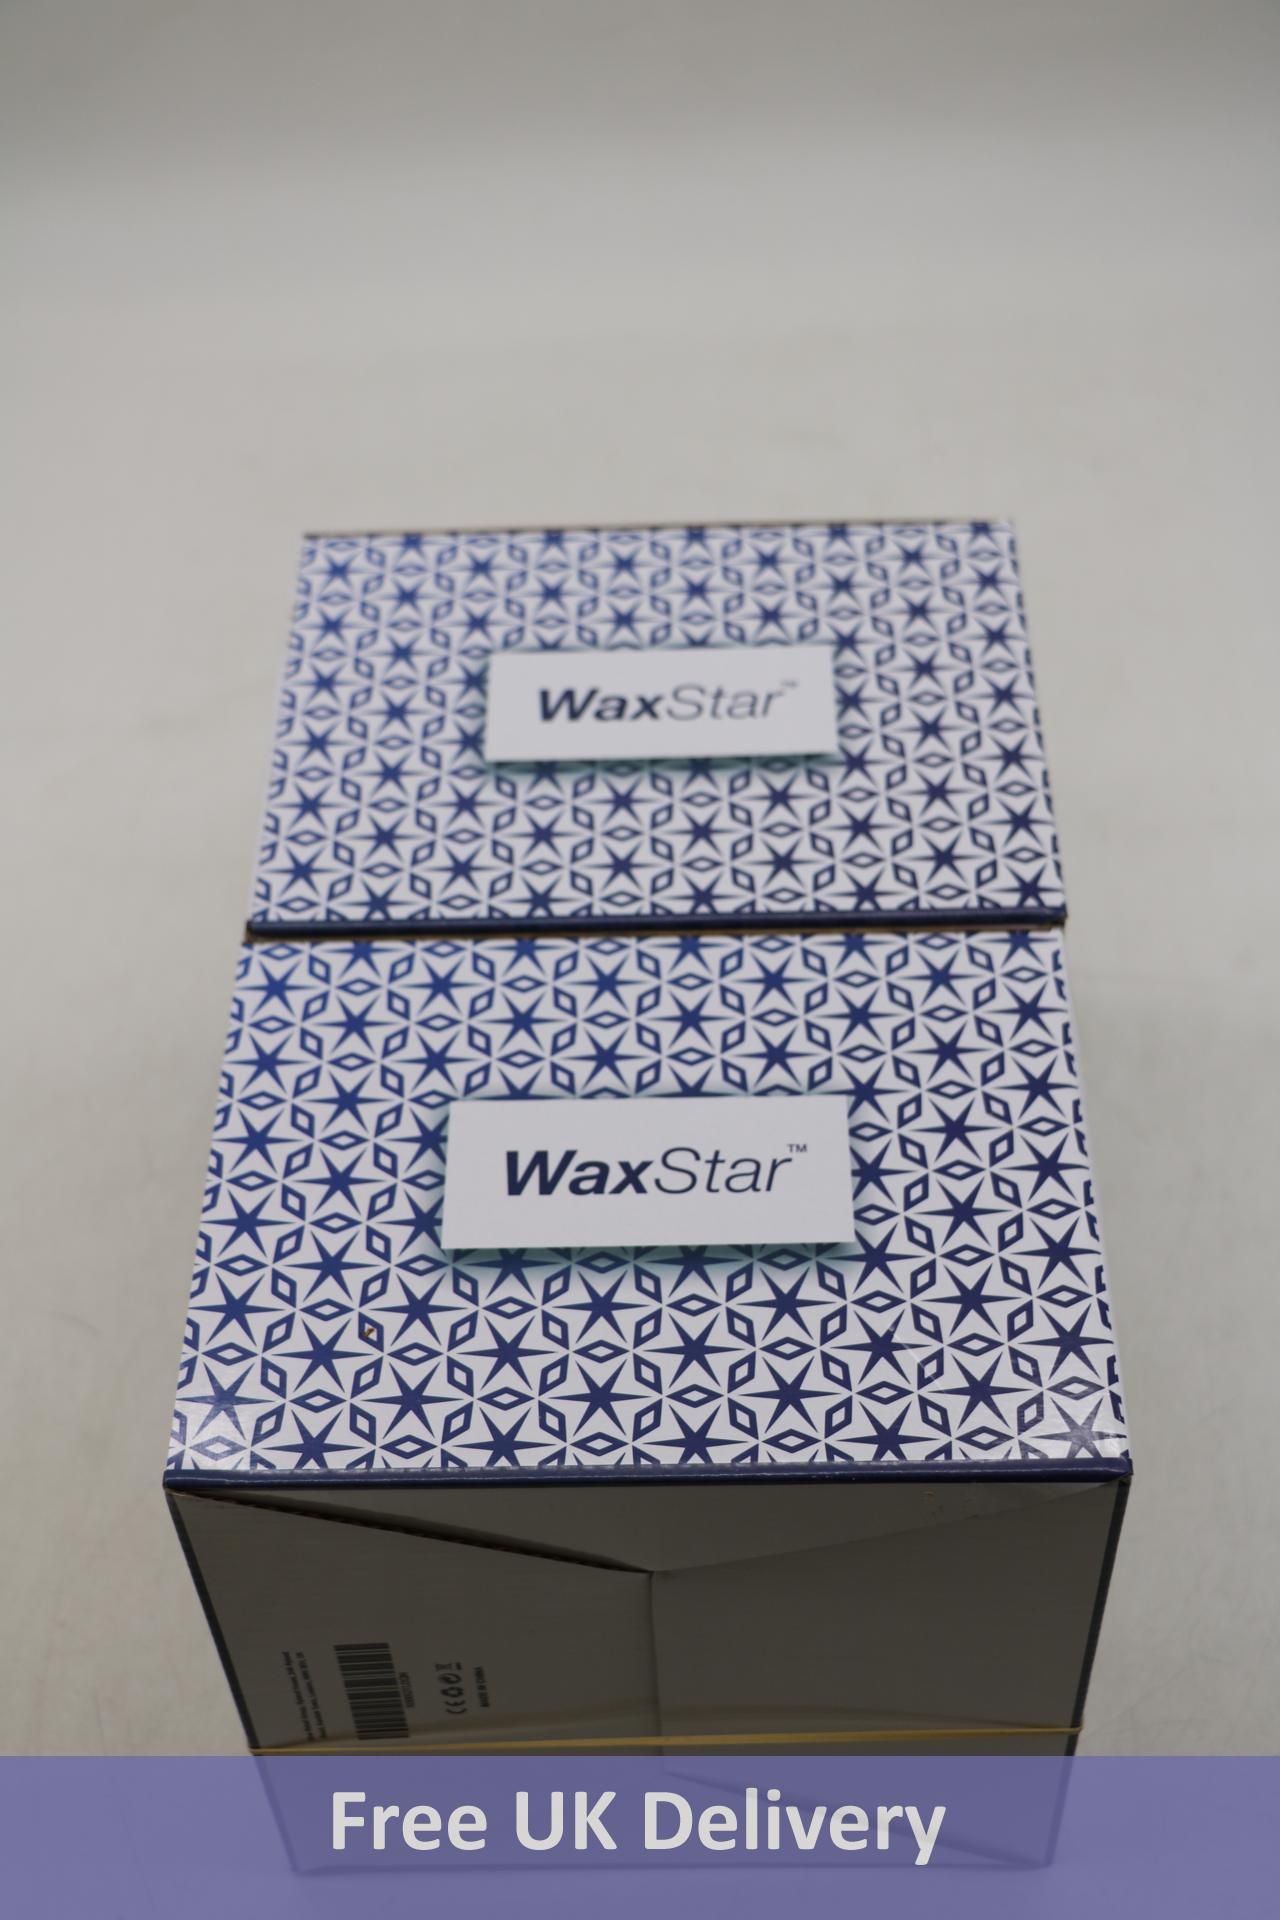 Six Vax Star Professional Wax Warmers - Image 2 of 3